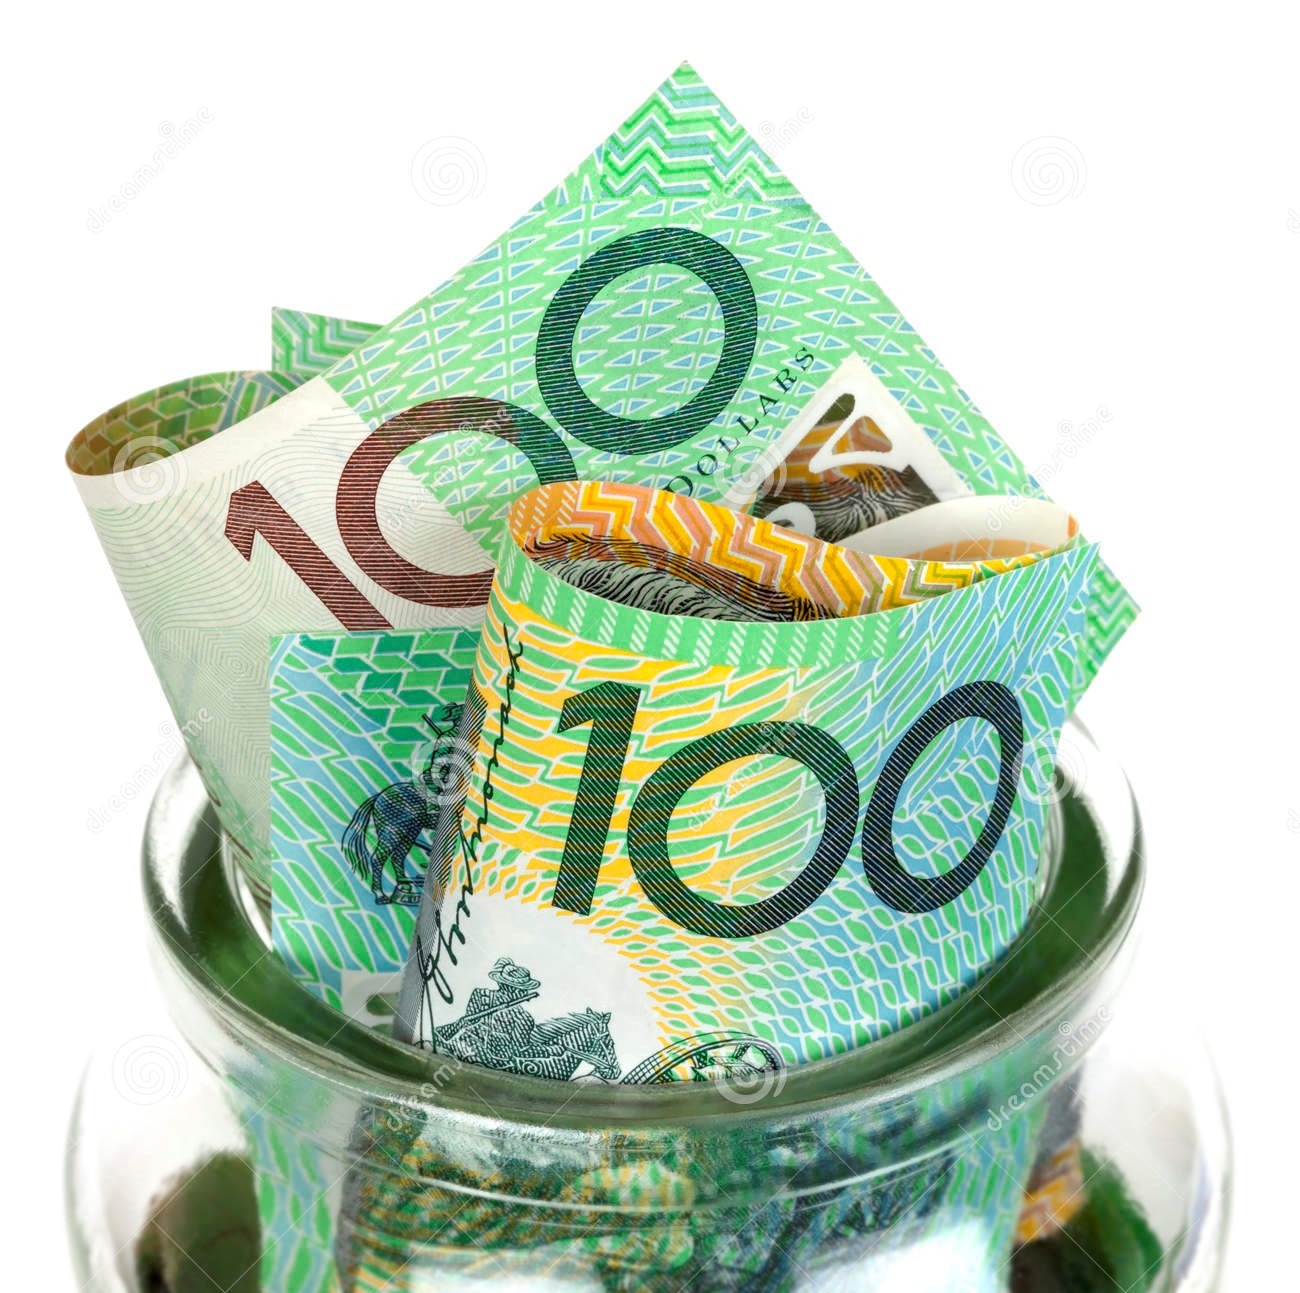 australian-money-jar-over-white-background-one-hundred-dollar-bills-30313789-jpg